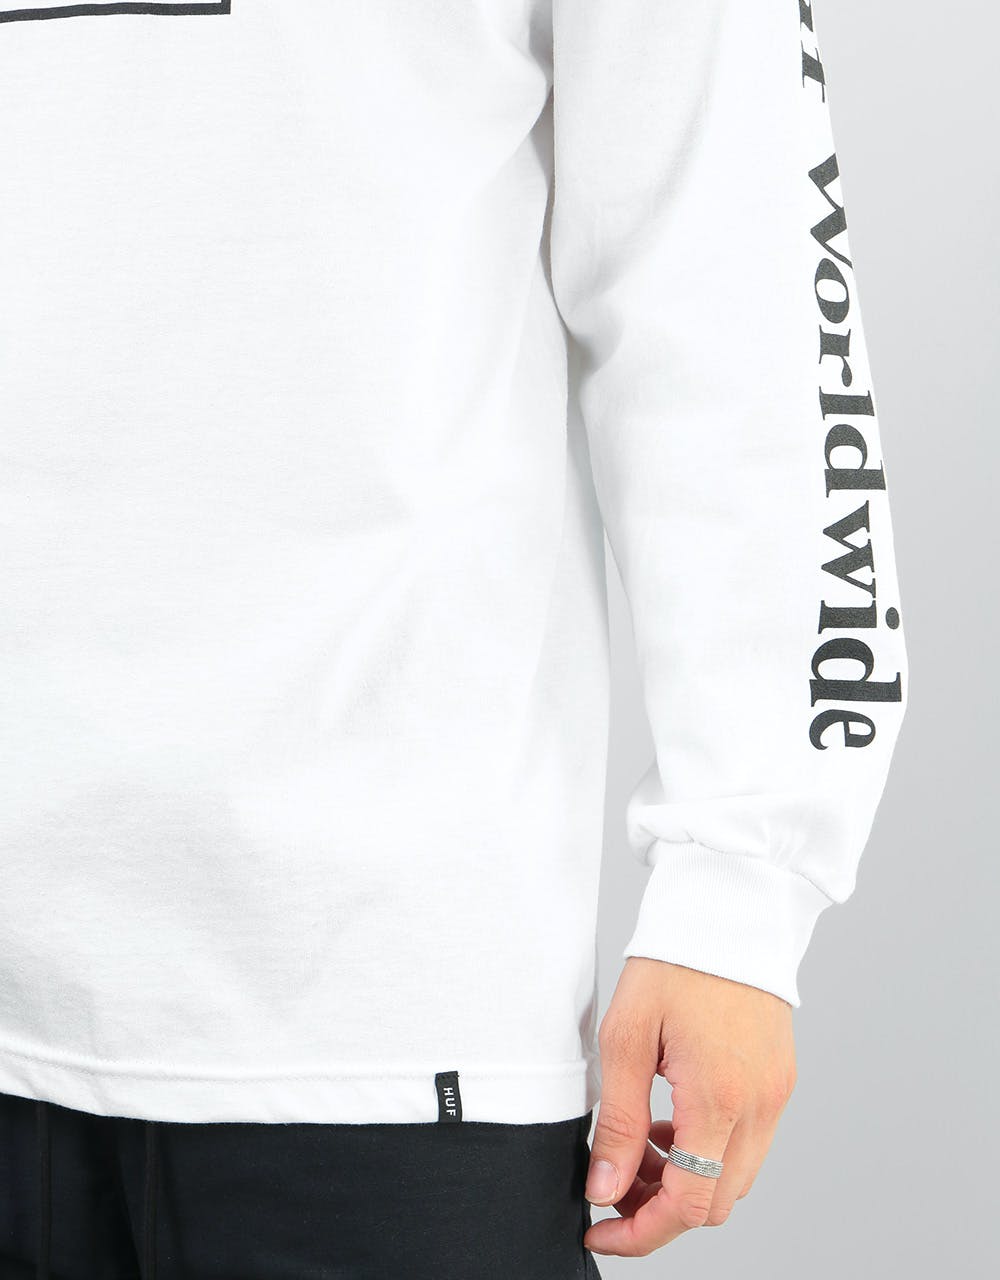 HUF Domestic Box L/S T-Shirt - White